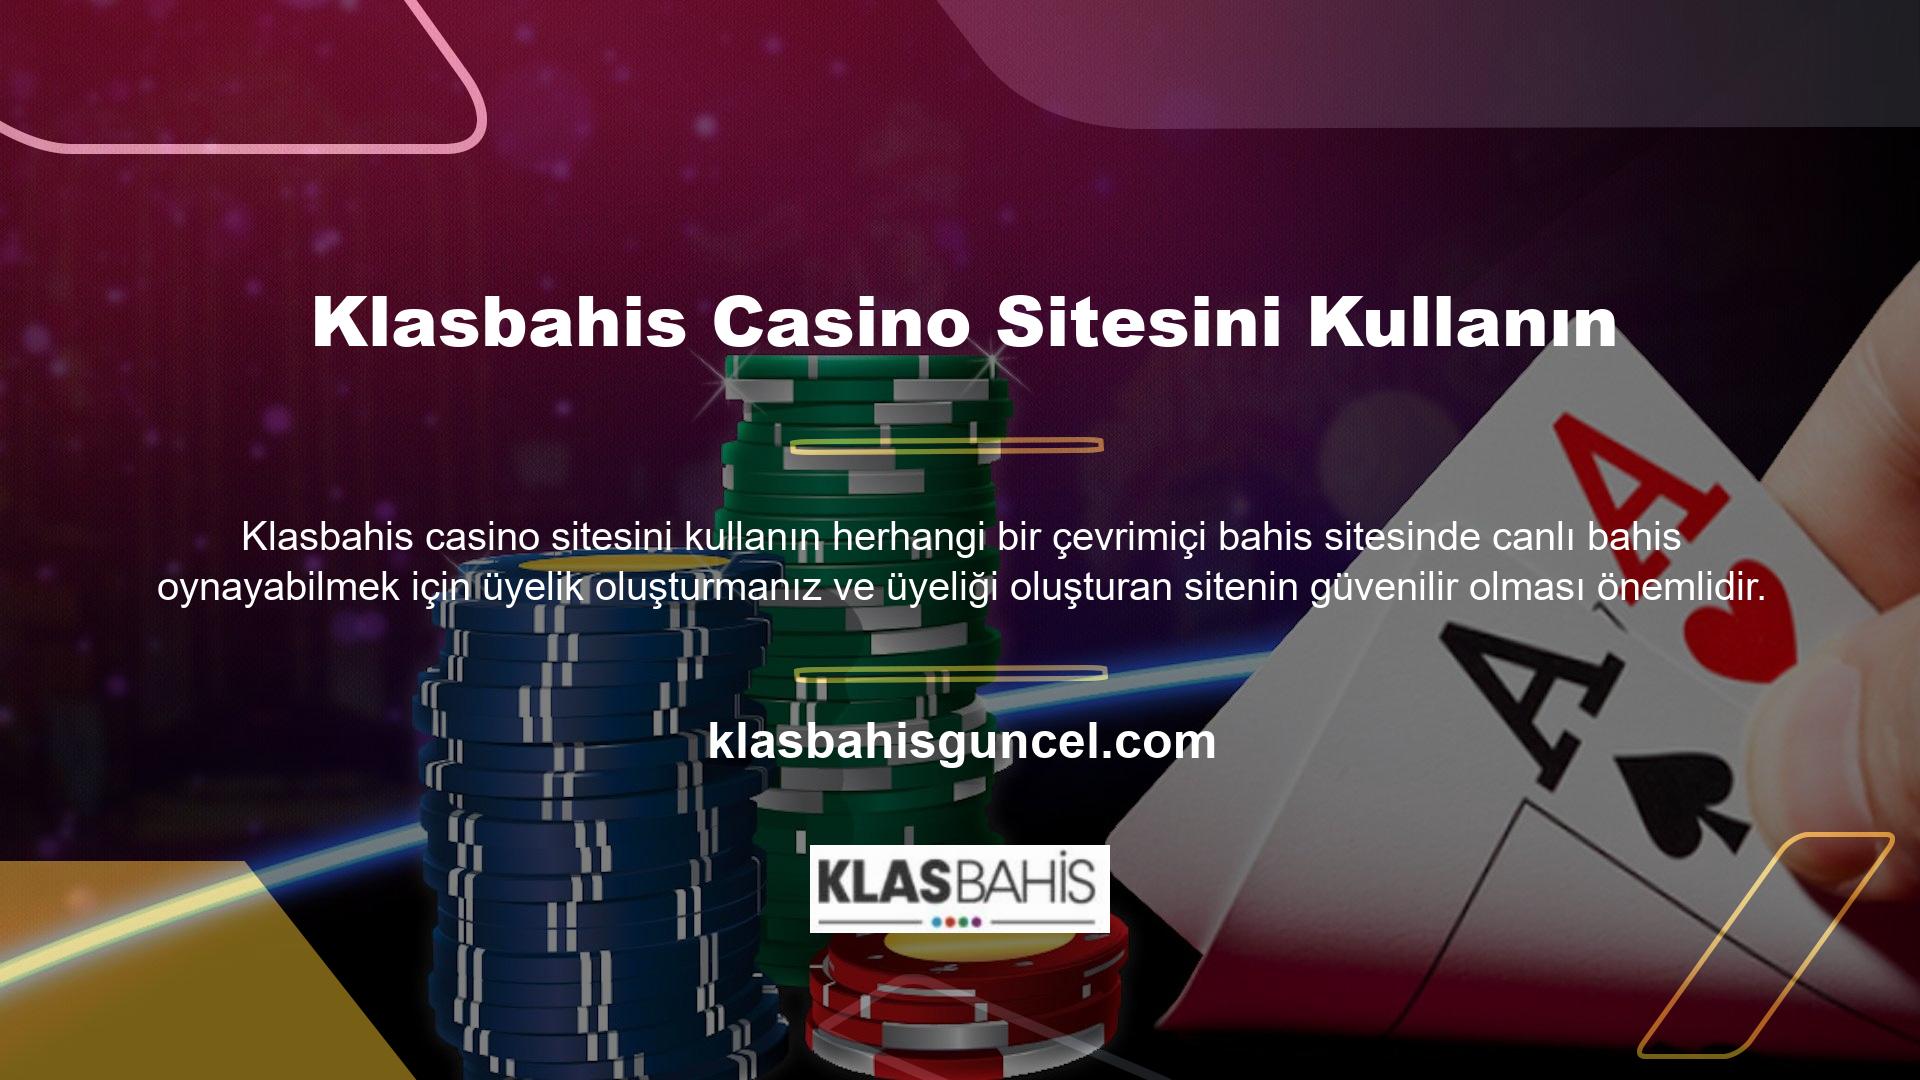 Klasbahis lisanslı bir casino sağlayıcısıdır ve casino endüstrisinde güvenilir bir bahis hizmetidir